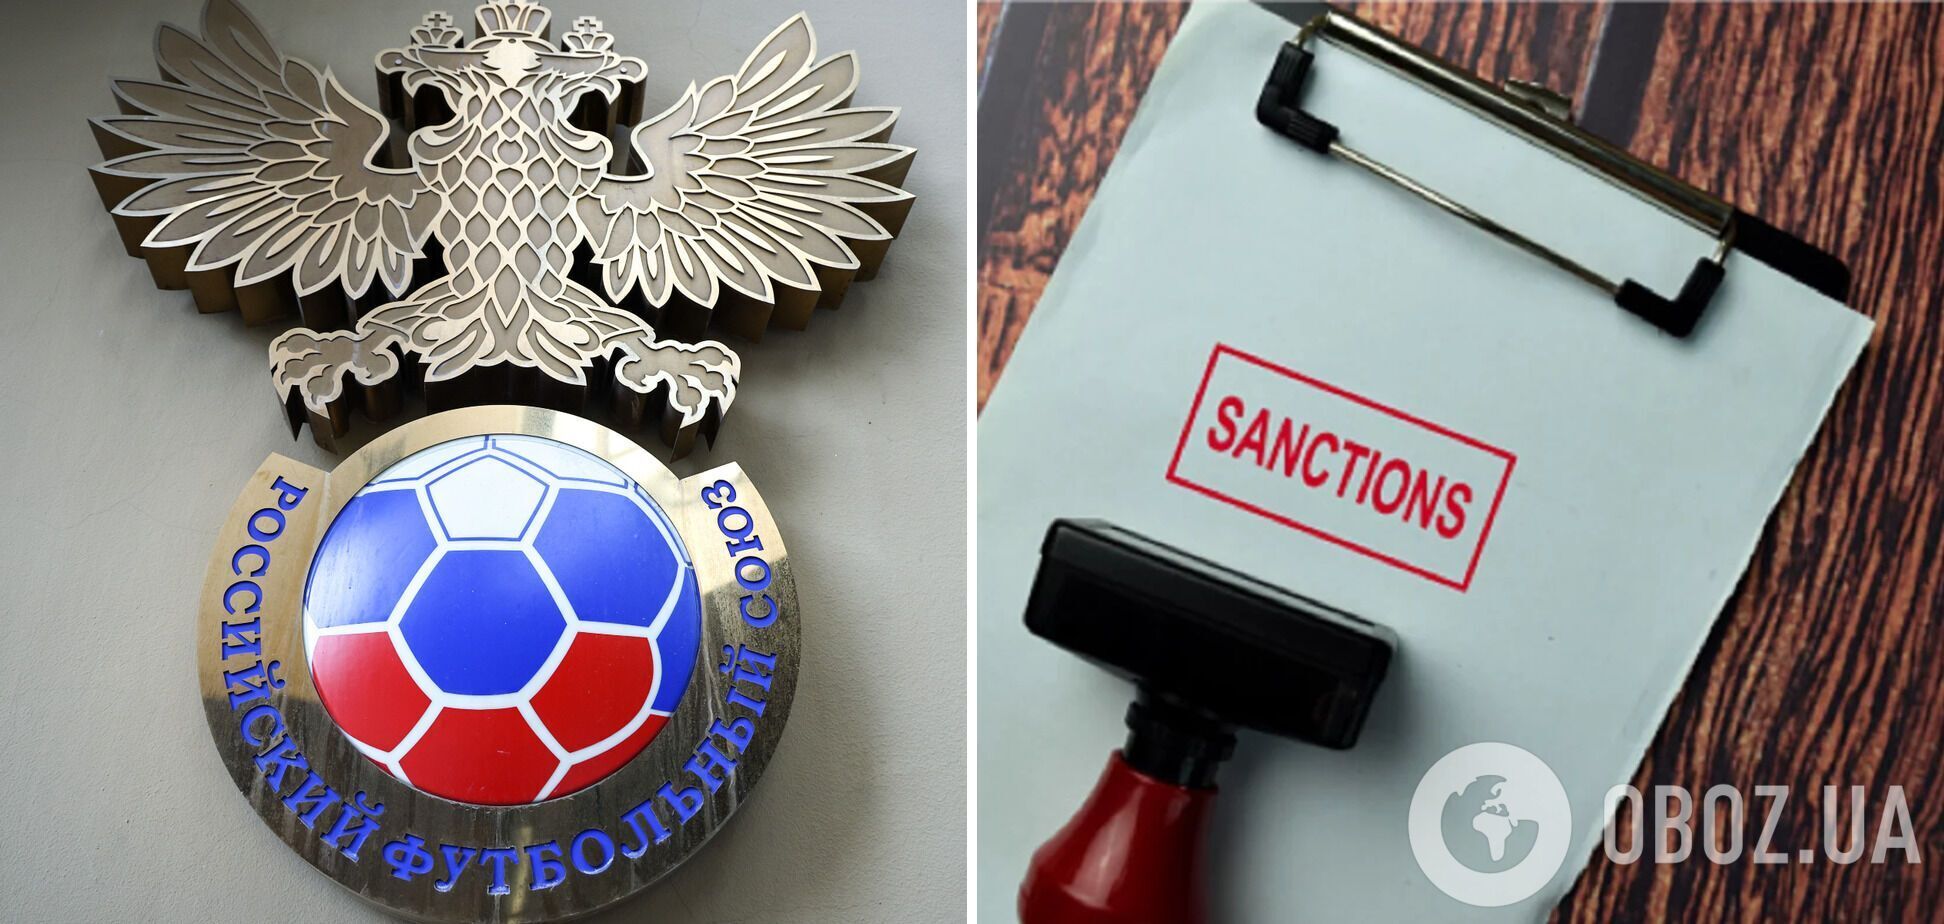 "Не было консультаций": в России удивились отстранению от мирового футбола, наехав на ФИФА